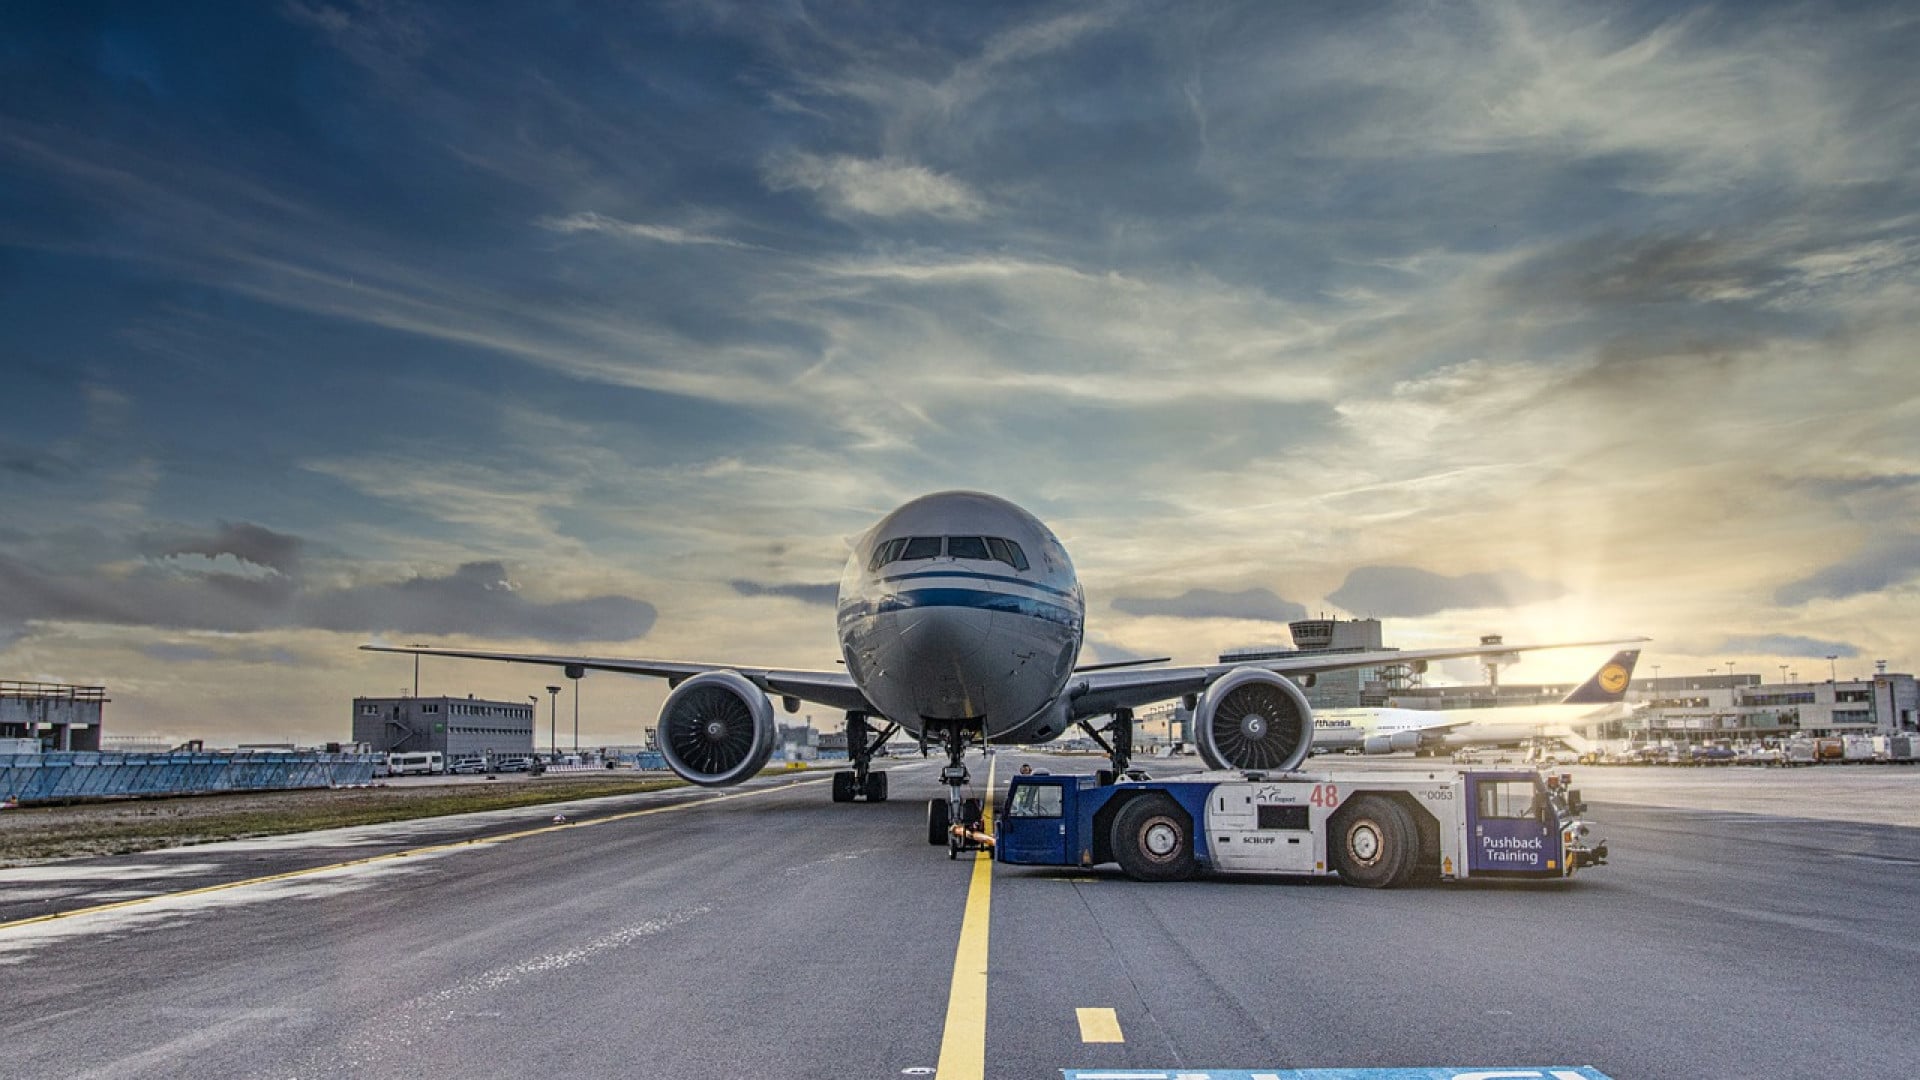 Comment améliorer la sécurité aéroportuaire ?